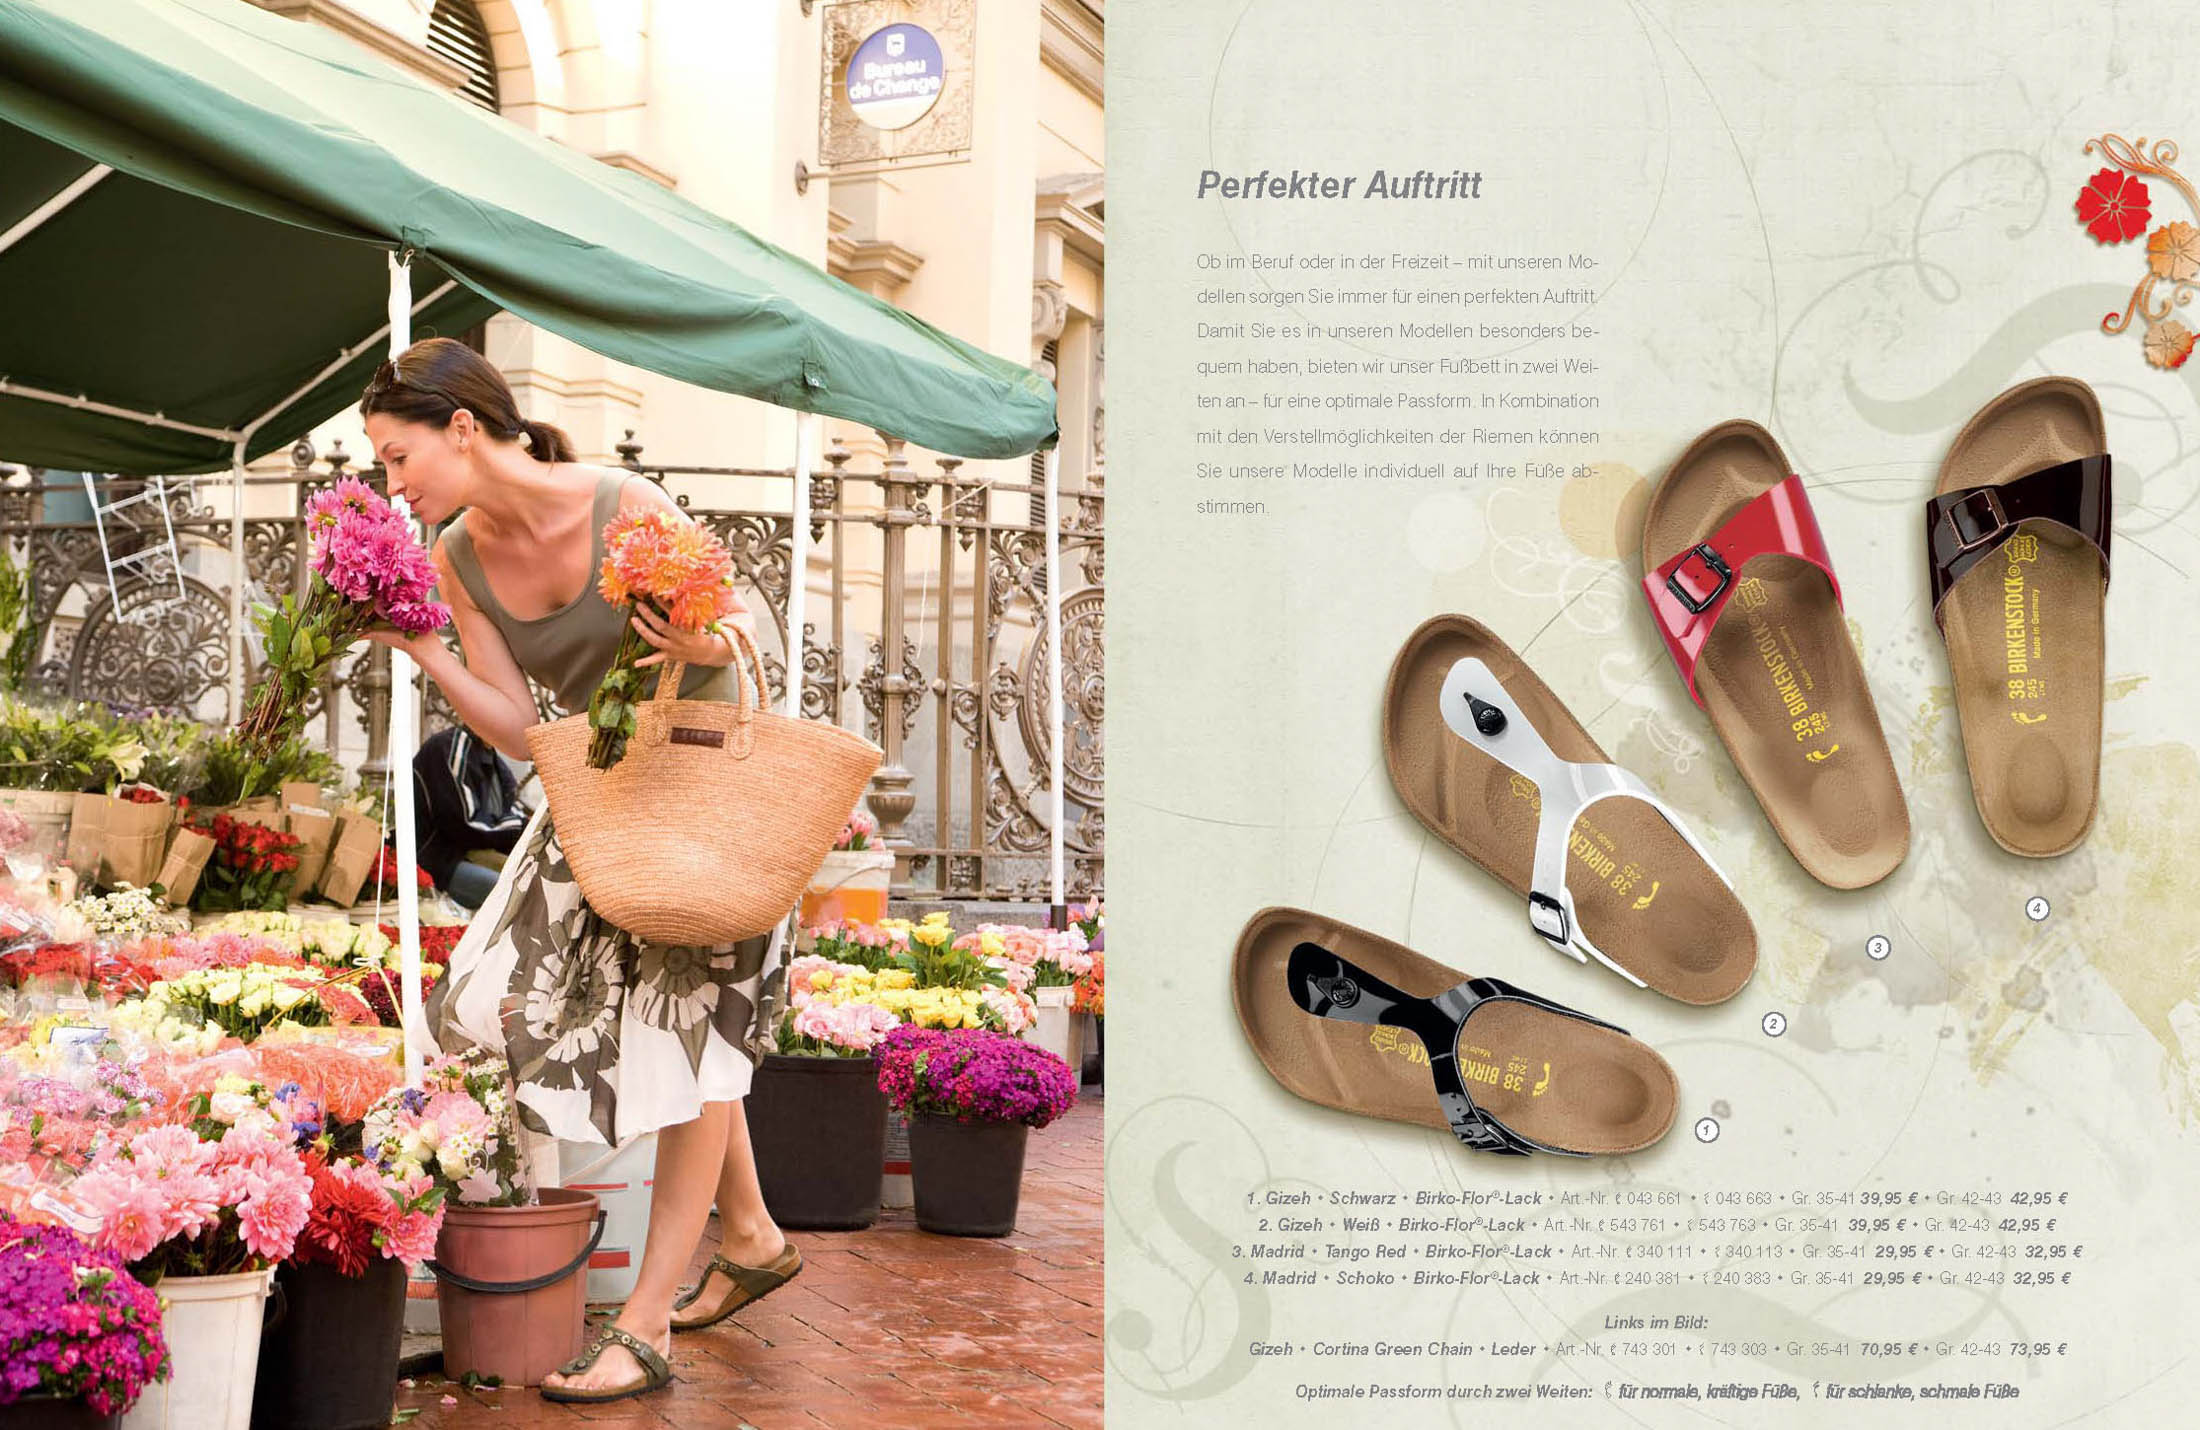 Eine Frau in einem gestreiften Kleid und Sandalen kauft an einem Marktstand bunte Blumen ein. Dazu sieht man eine Zeitschriftenseite mit verschiedenen Sandalenstilen. © Fotografie Tomas Rodriguez